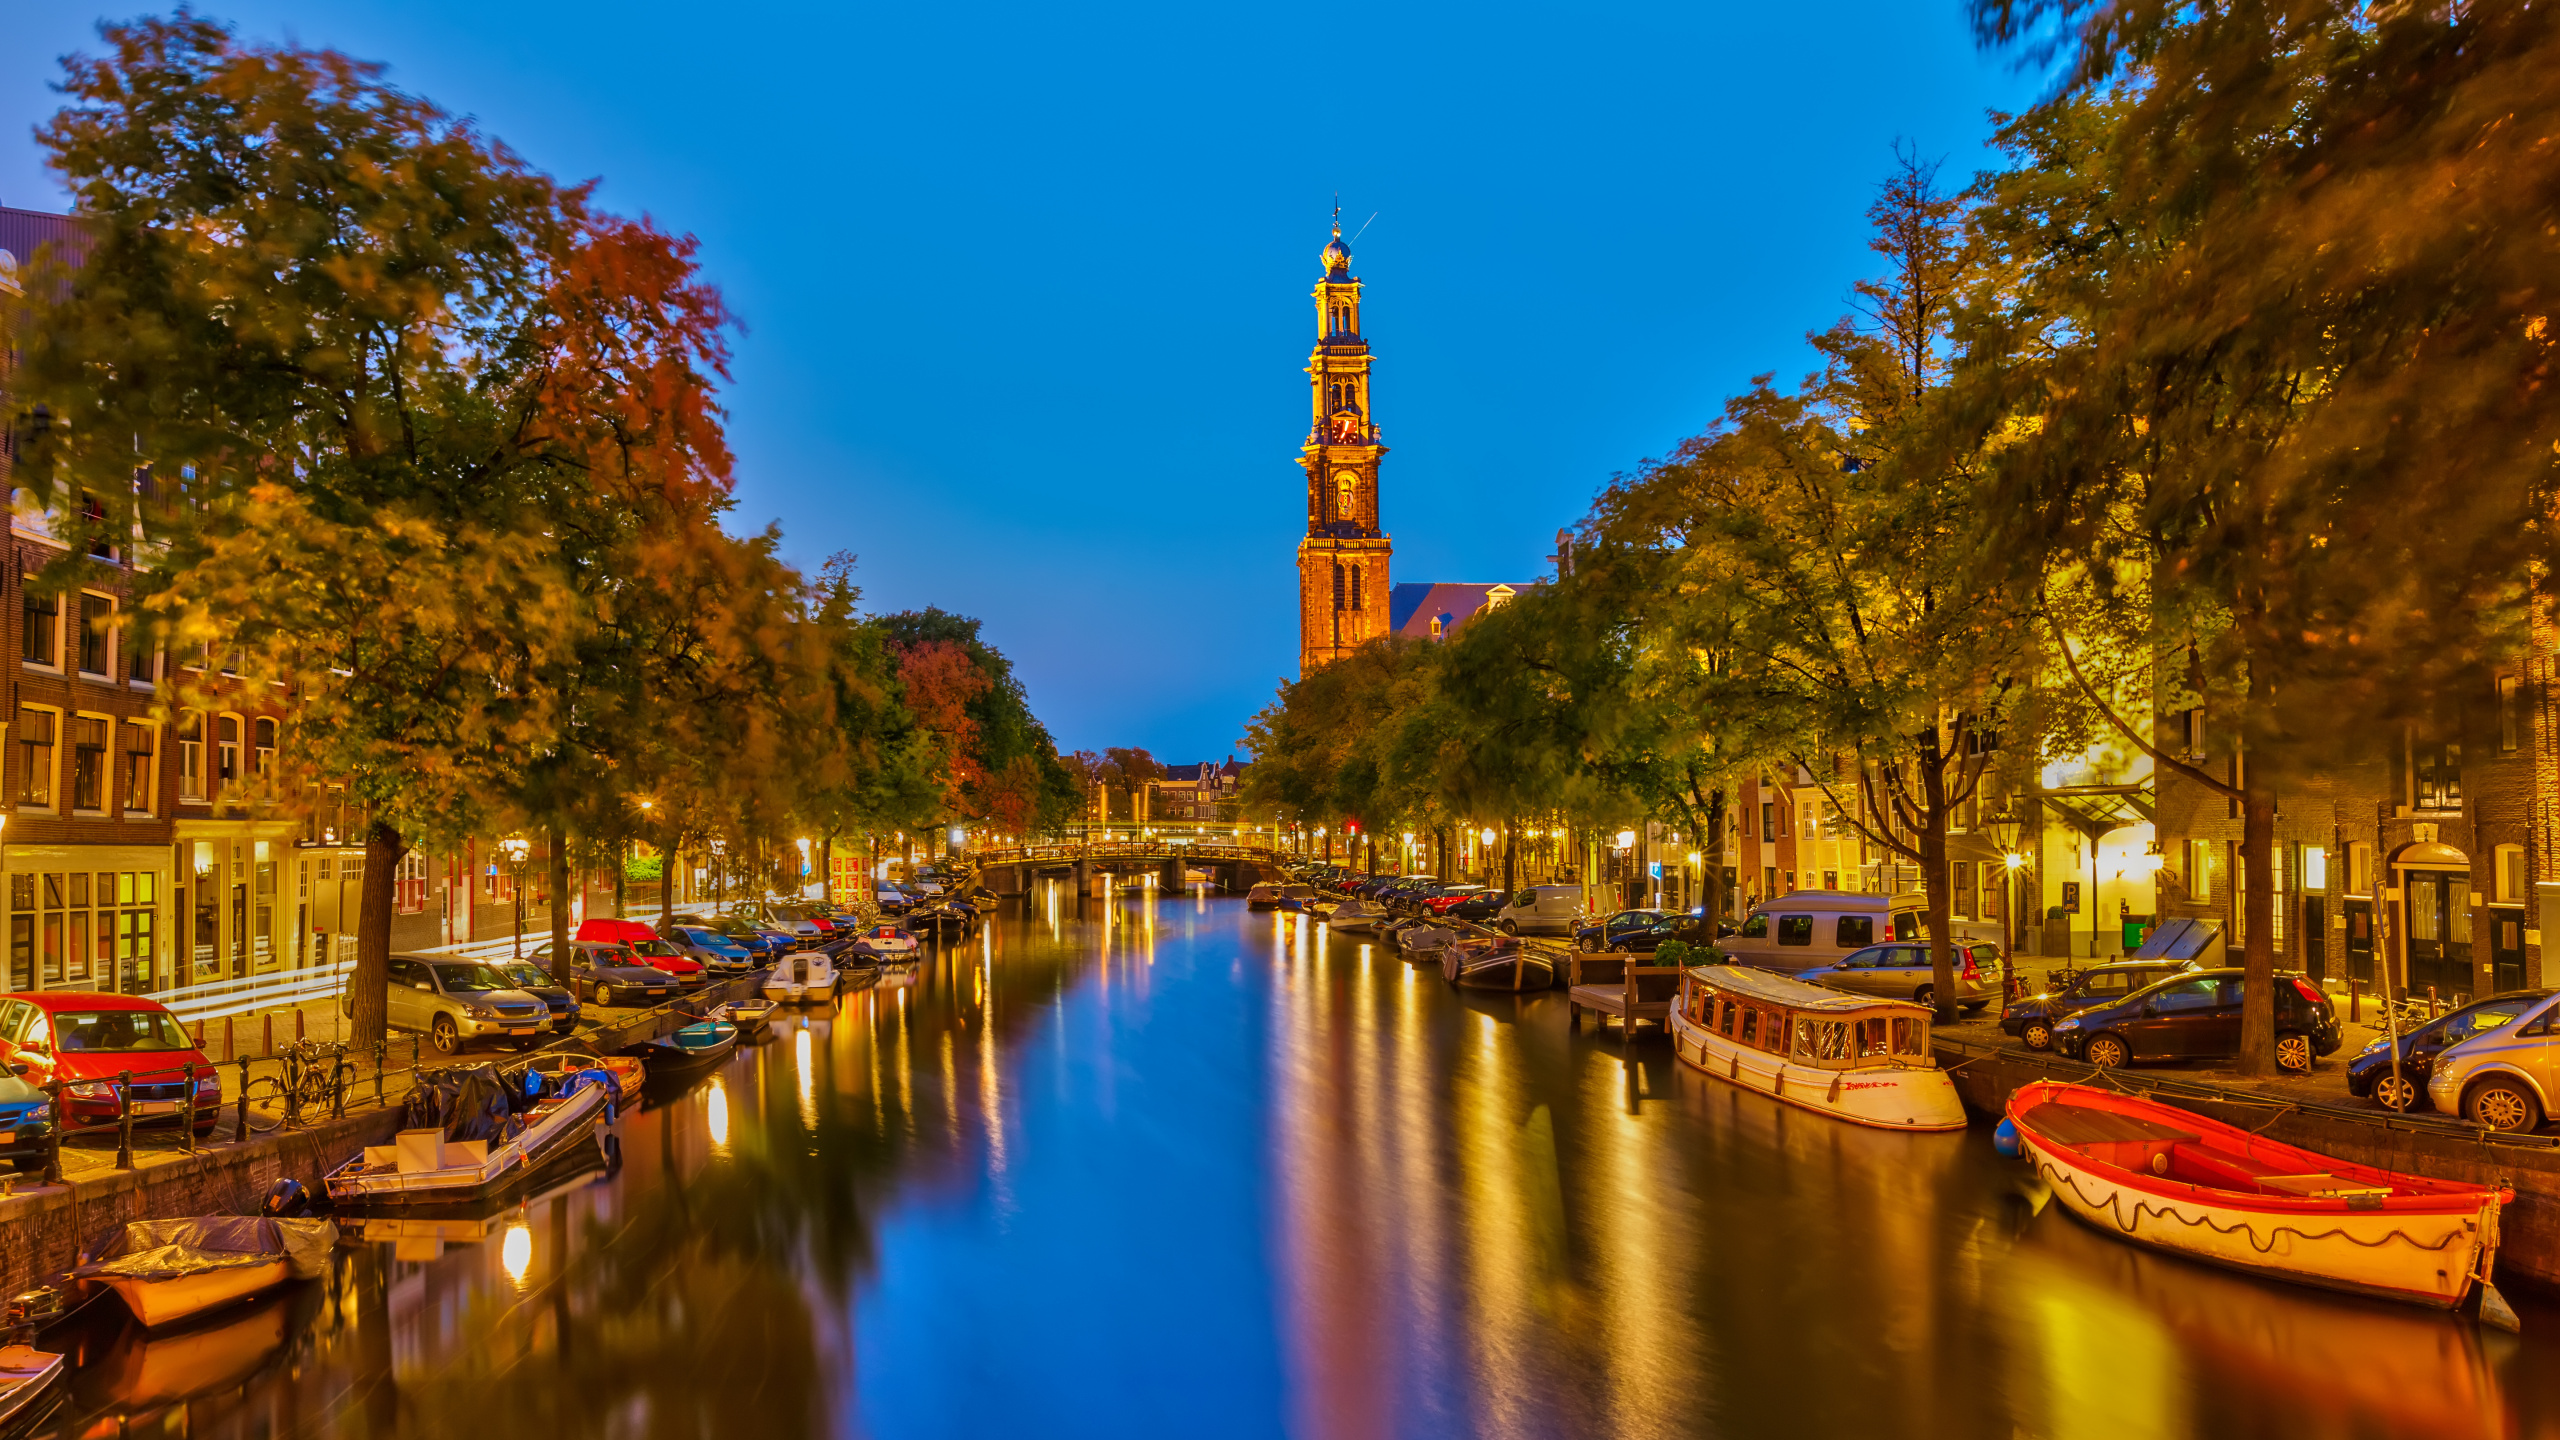 阿姆斯特丹运河, 运河, 人体内的水, 反射, 里程碑 壁纸 2560x1440 允许